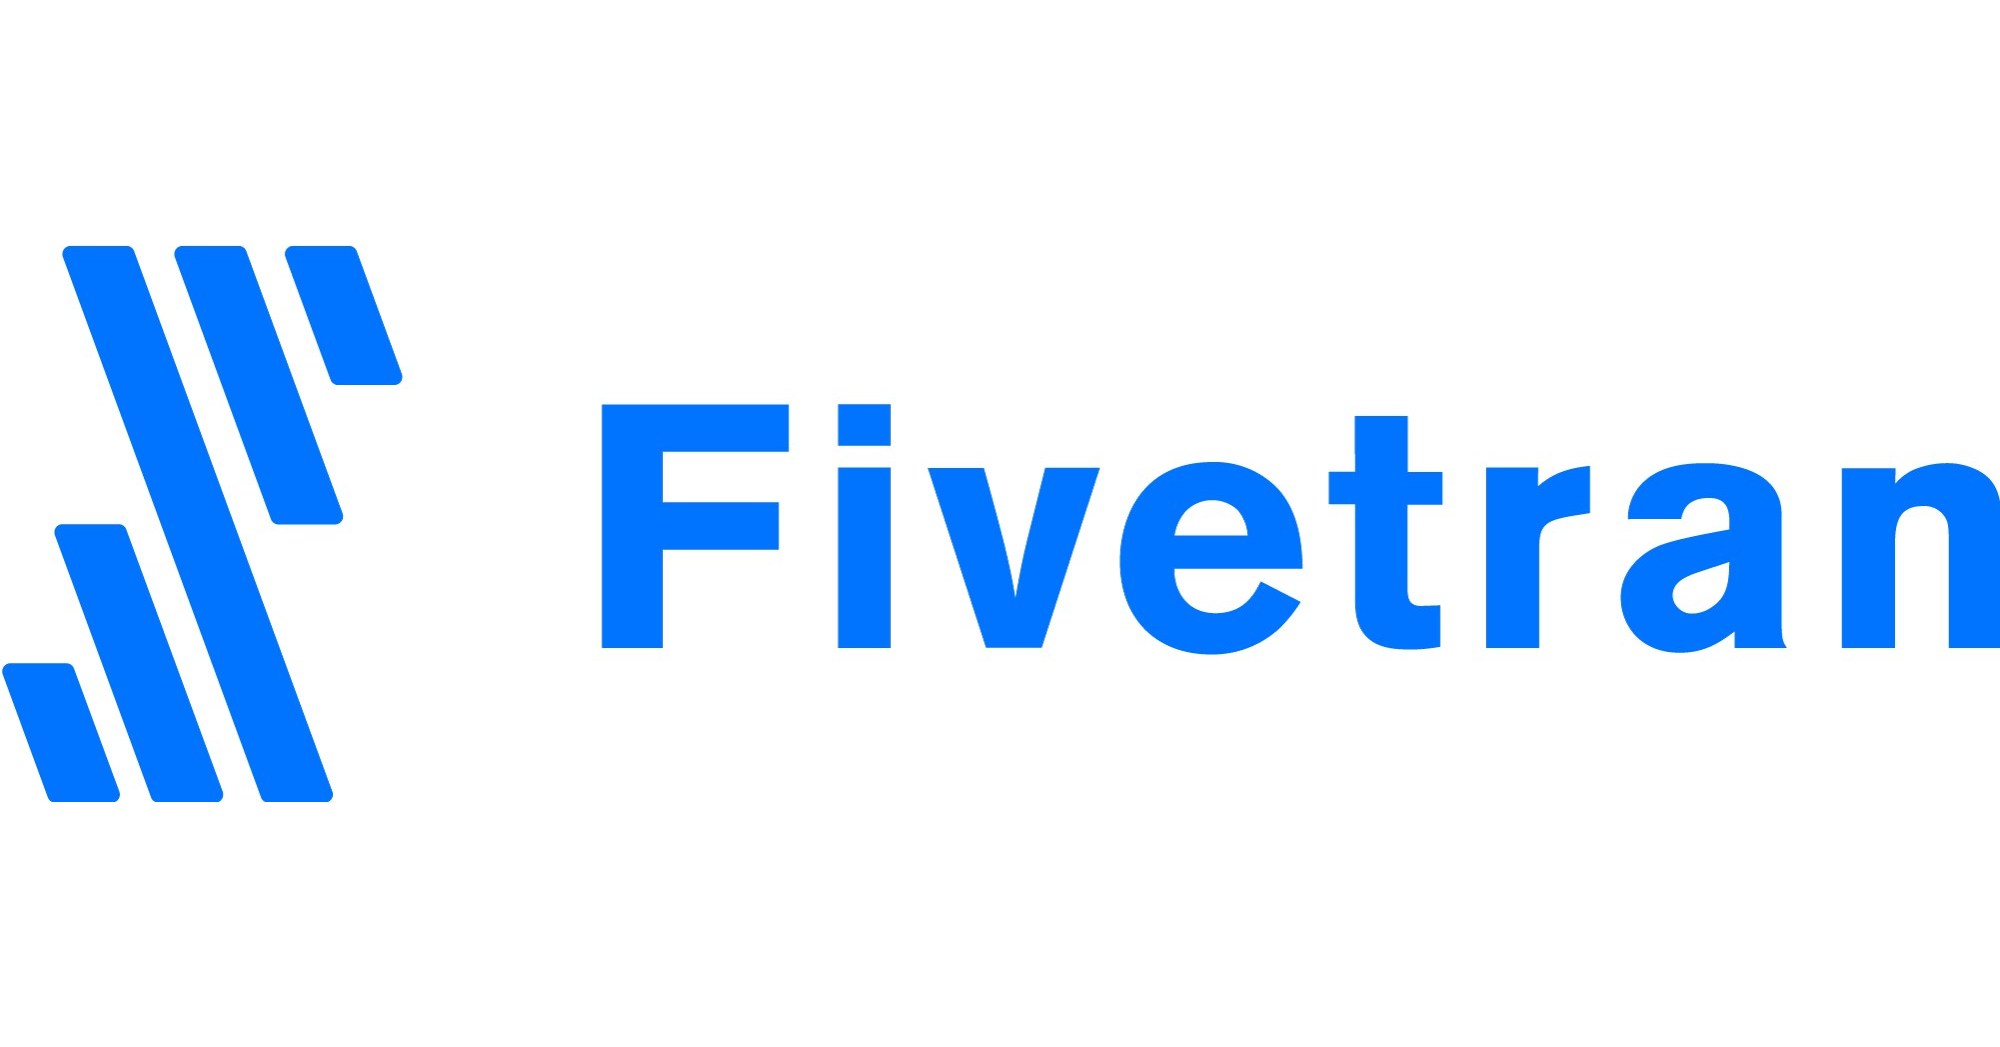 Fivetran_Logo